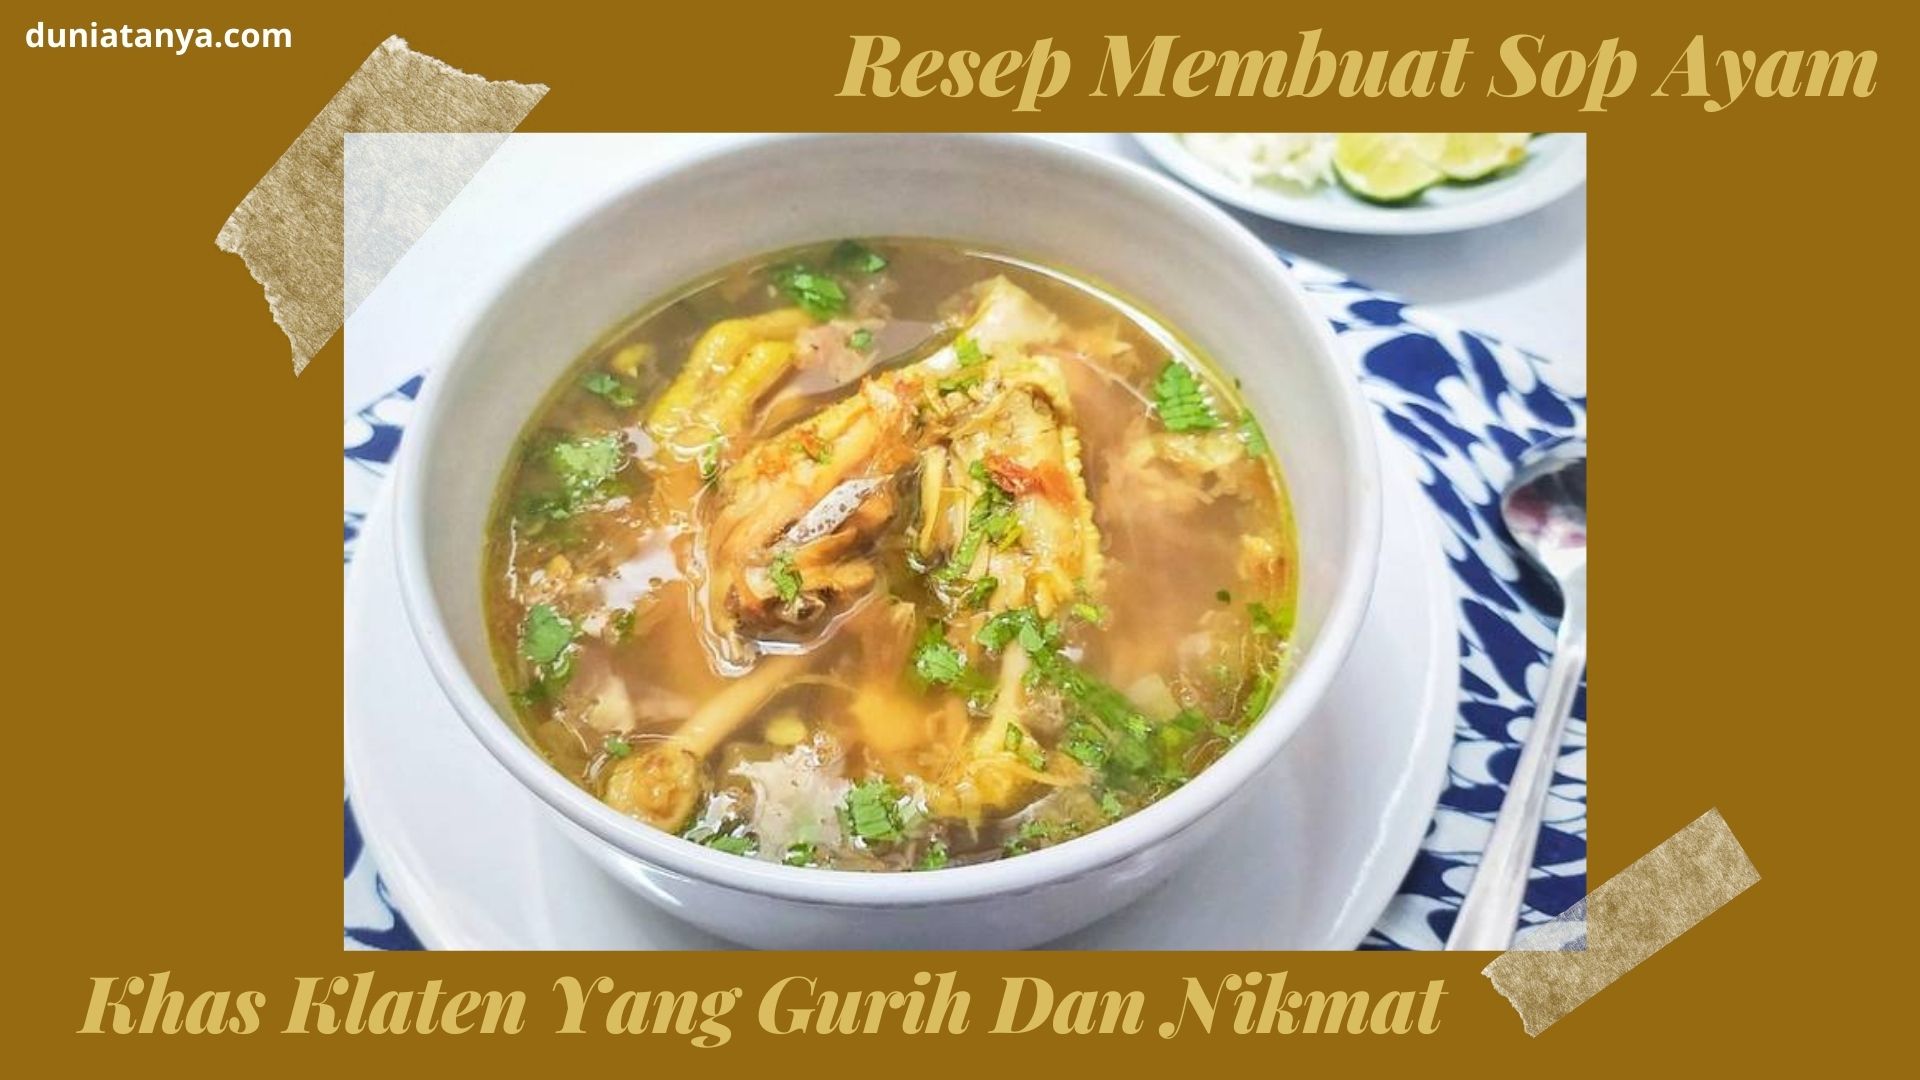 You are currently viewing Resep Membuat Sop Ayam Khas Klaten Yang Gurih Dan Nikmat